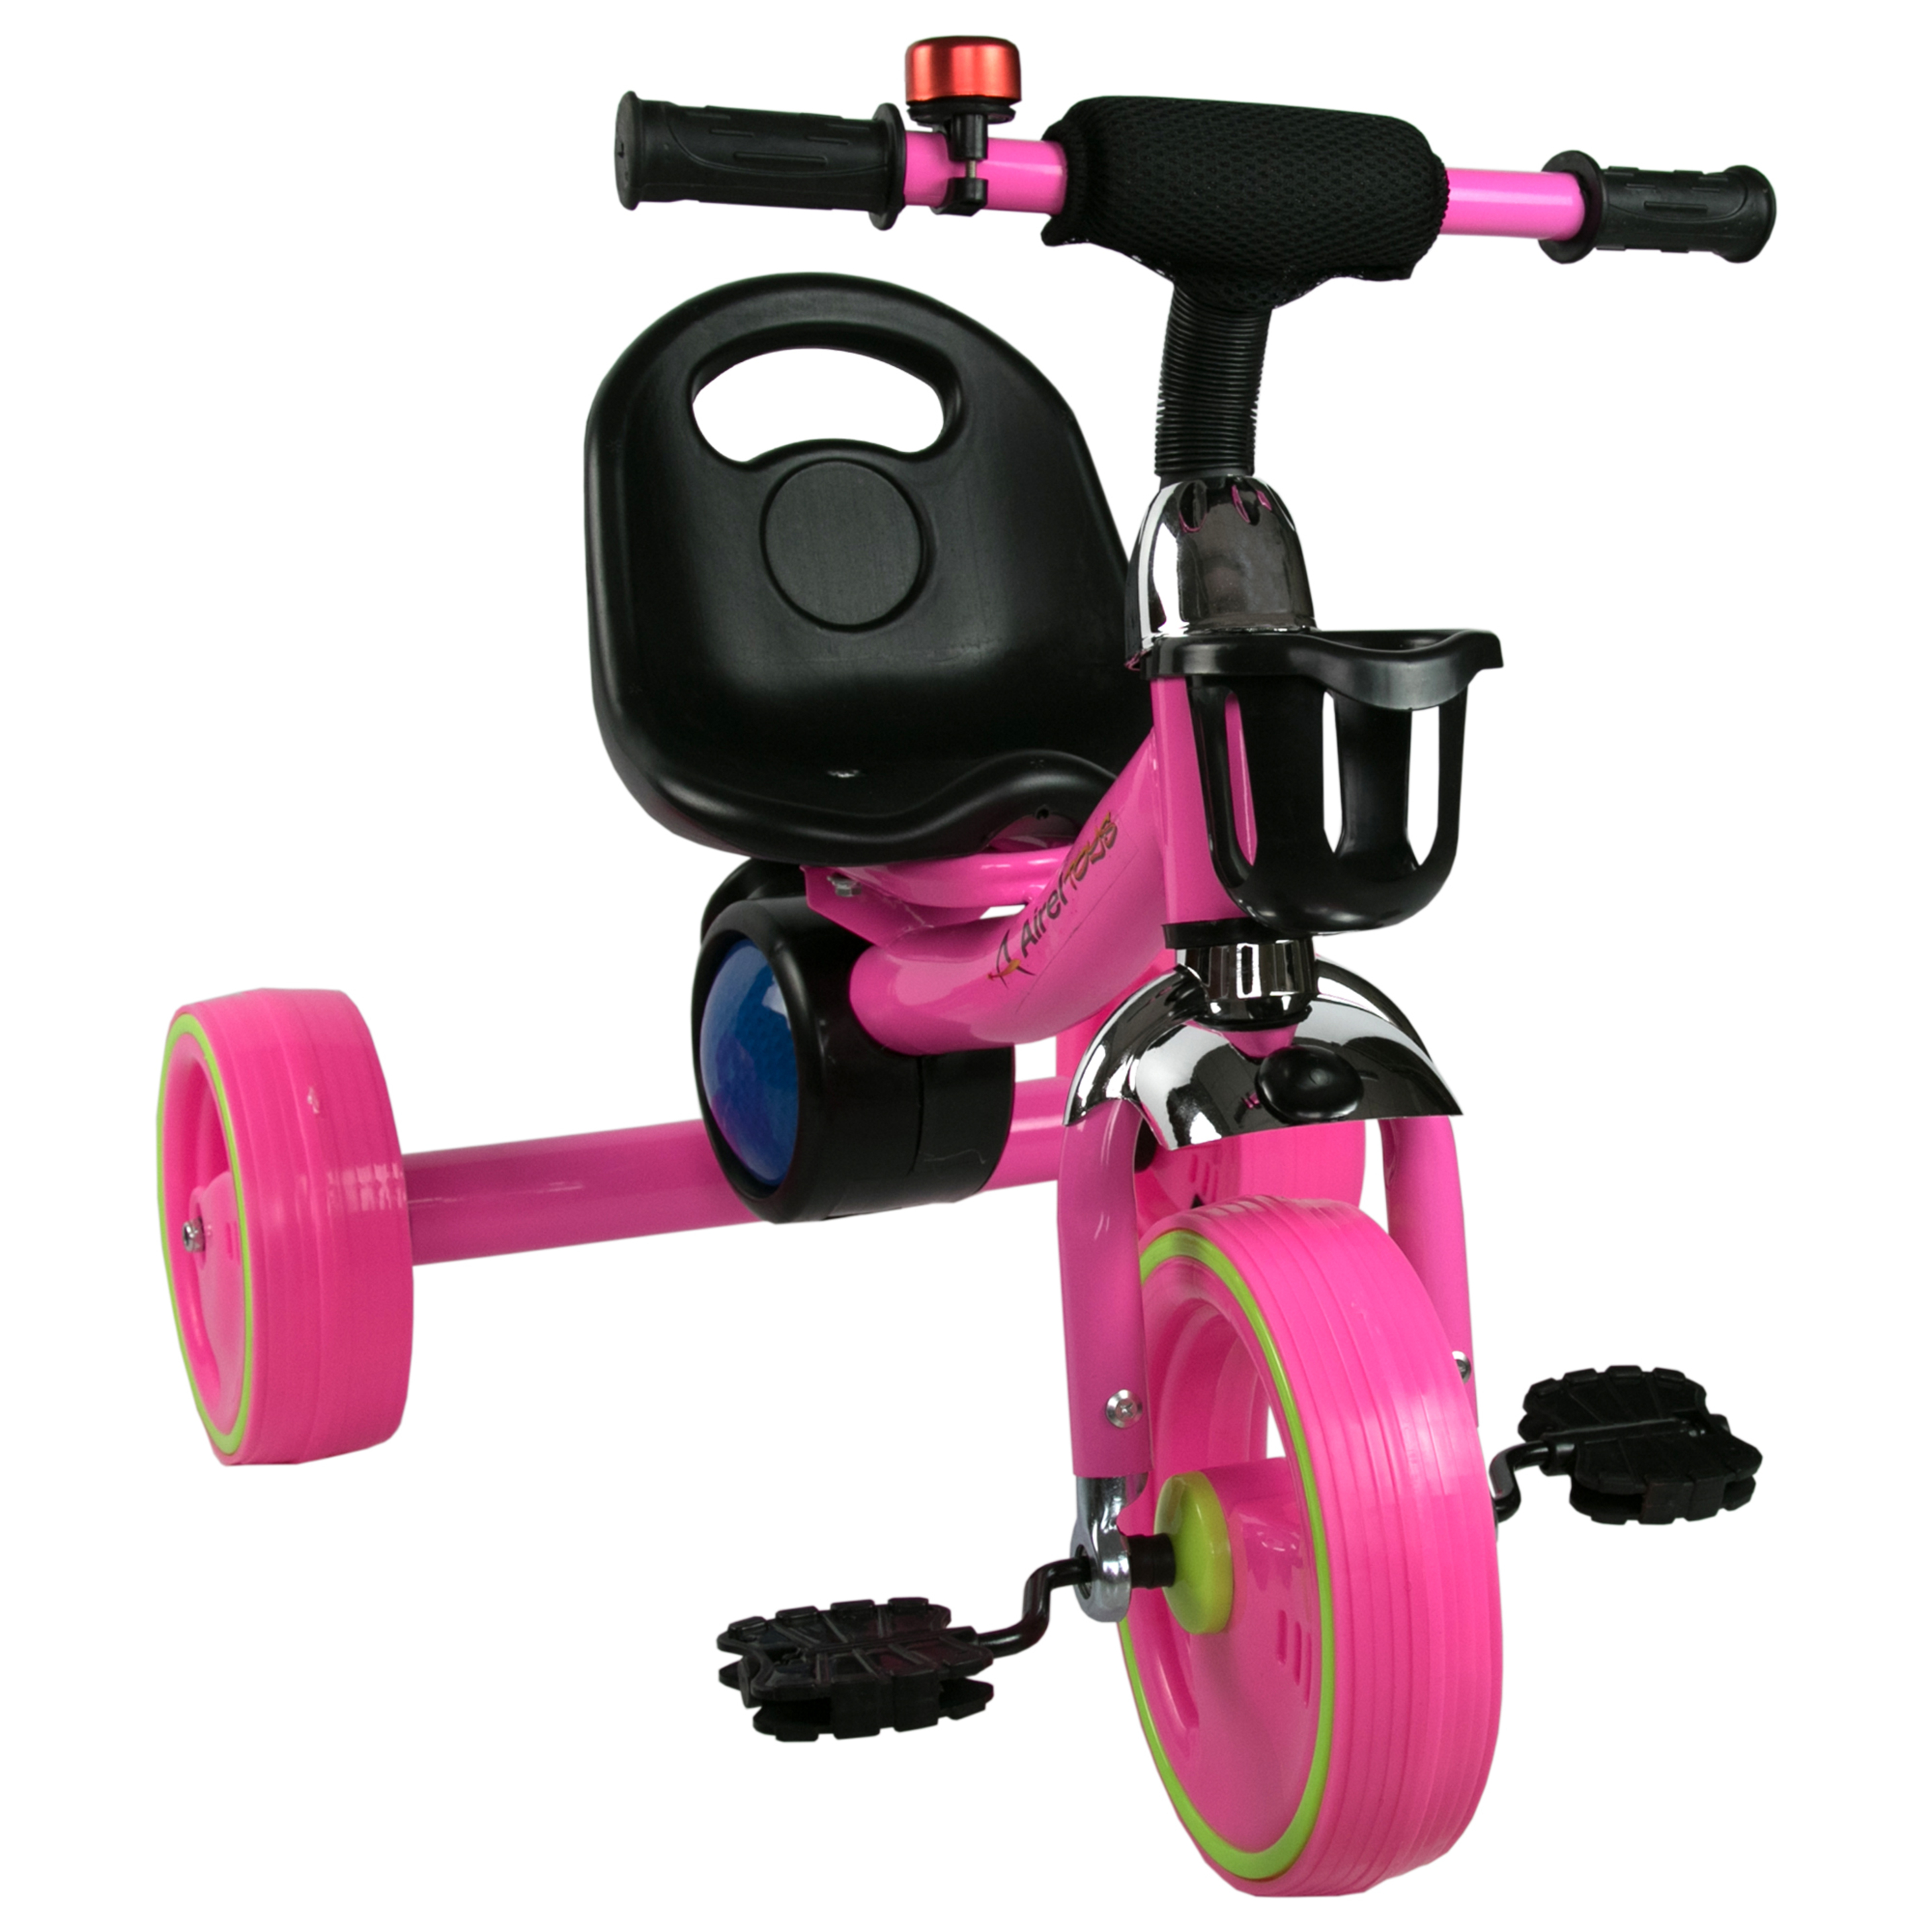 Bici Correpasillos - Triciclos Para Niños Con Asiento Y Sonido - Bicicleta De Equilibrio Airel